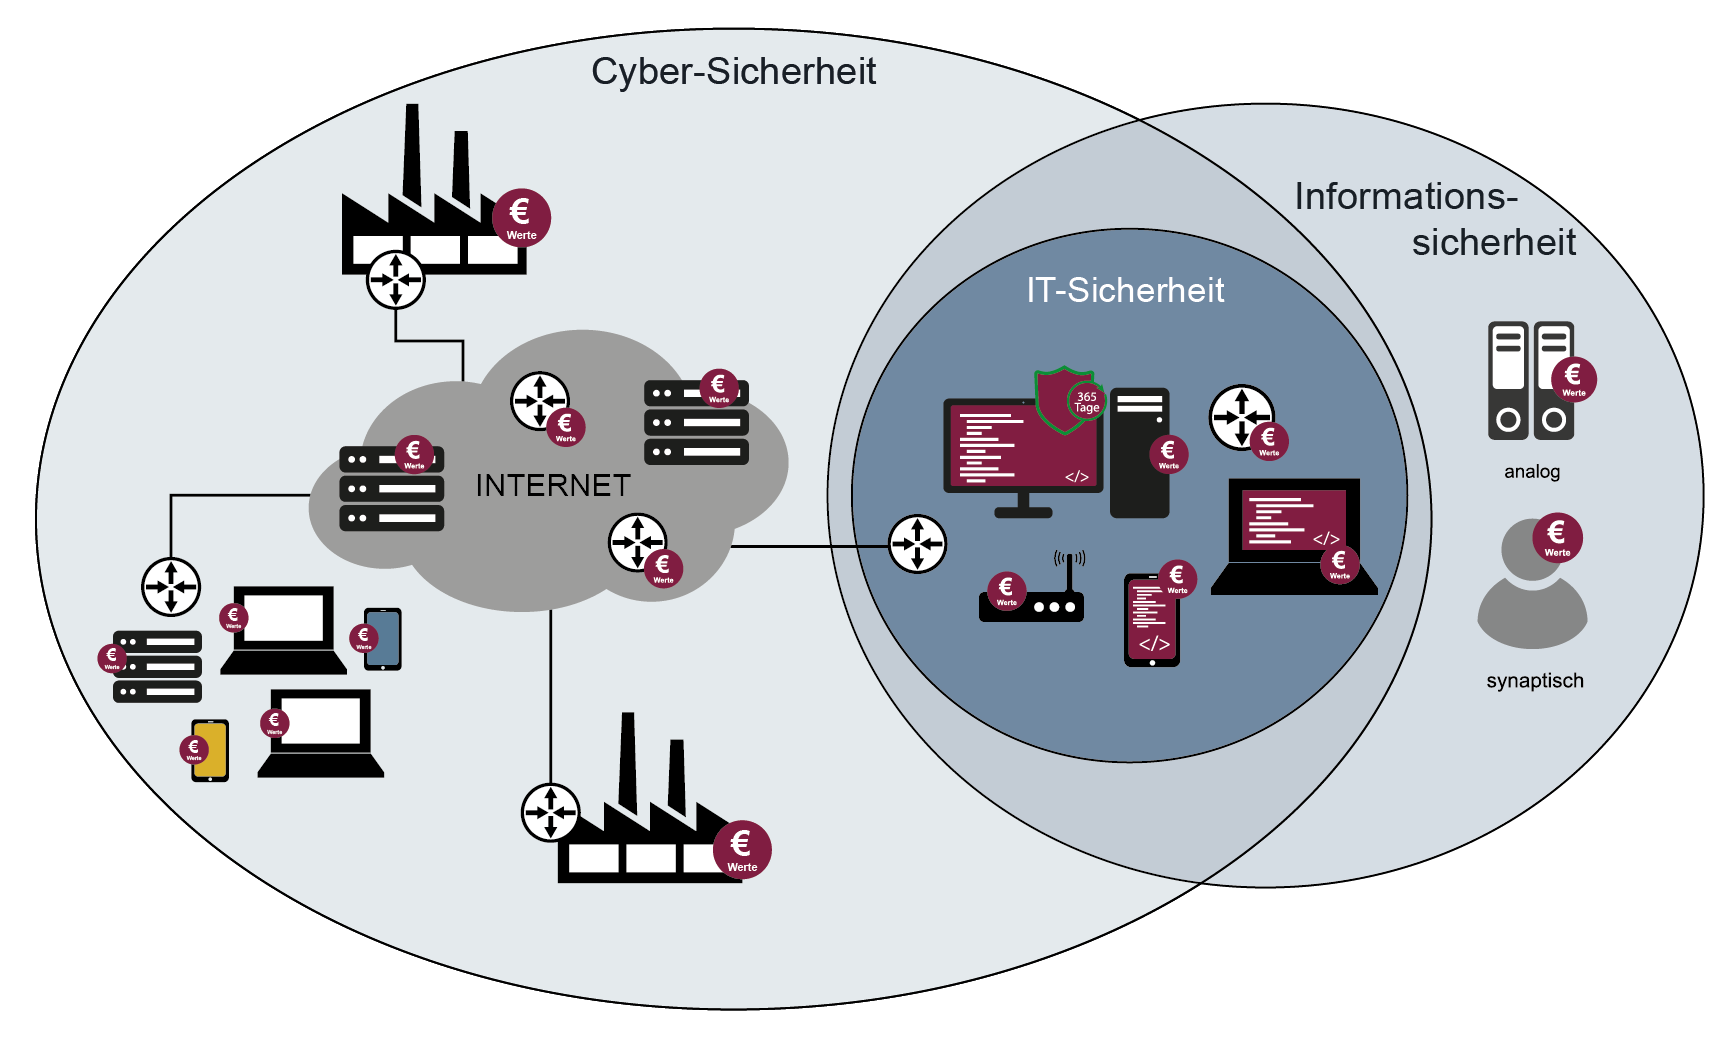 Cyber-Sicherheit in Zusammenhang mit Informationssicherheit und IT-Sicherheit